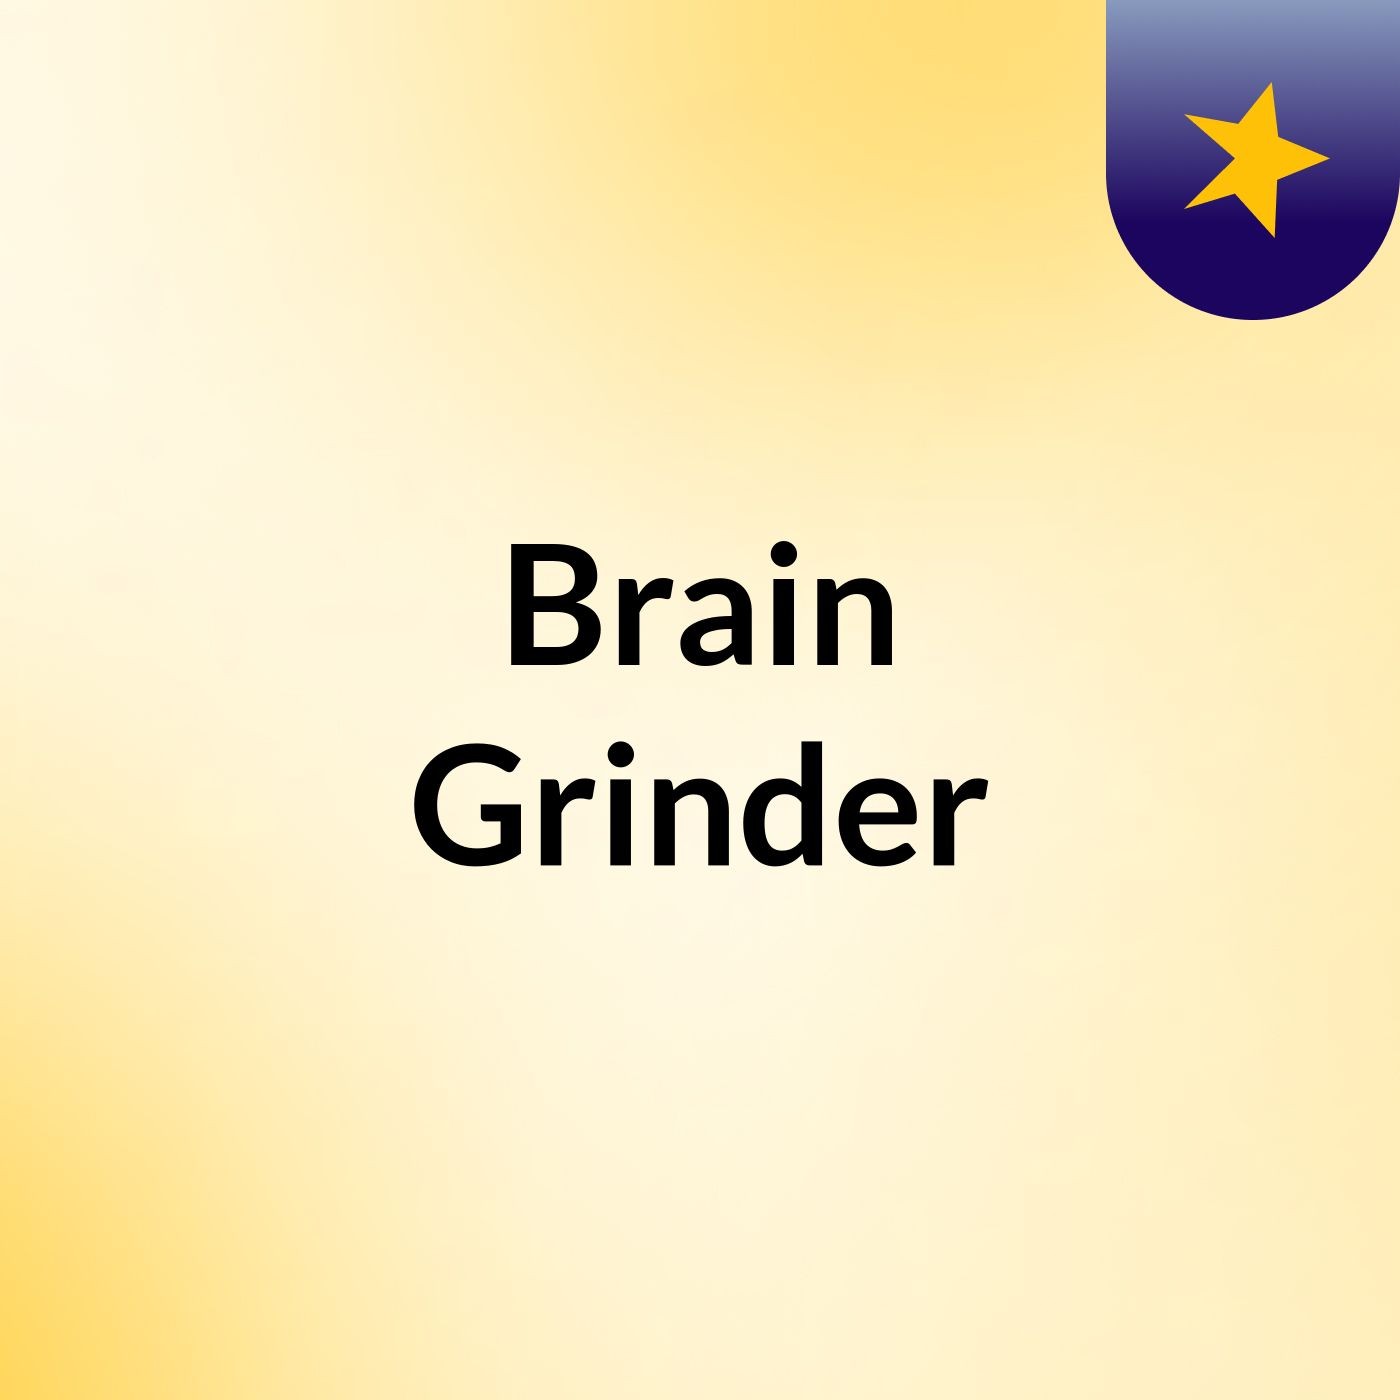 Brain Grinder